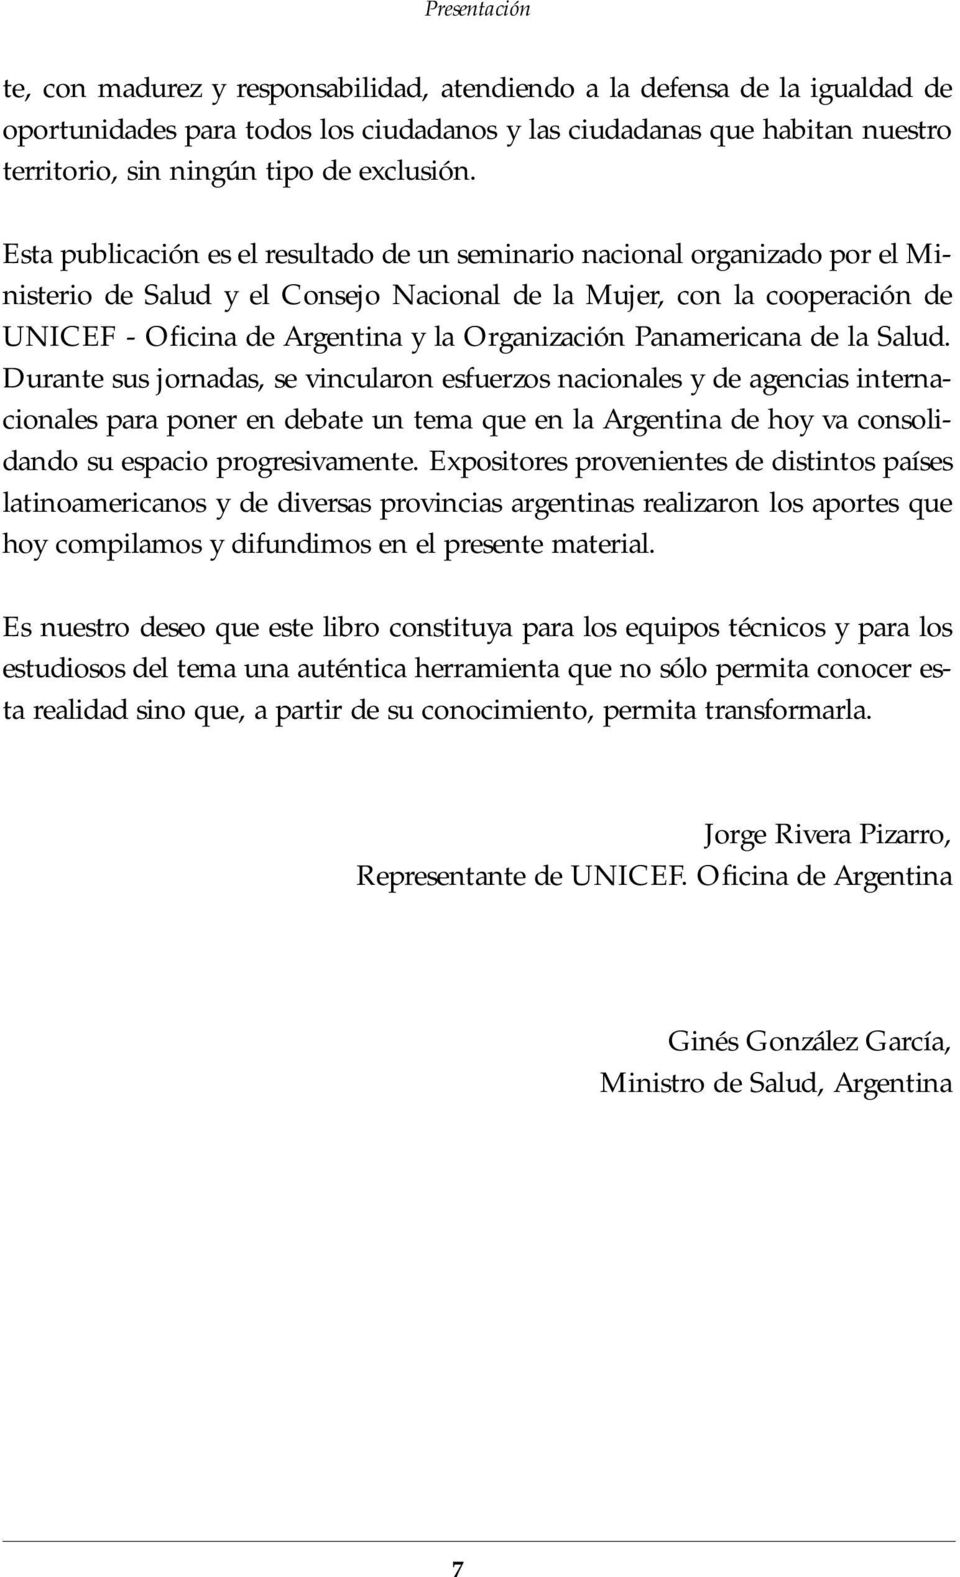 Esta publicación es el resultado de un seminario nacional organizado por el Ministerio de Salud y el Consejo Nacional de la Mujer, con la cooperación de UNICEF - Oficina de Argentina y la